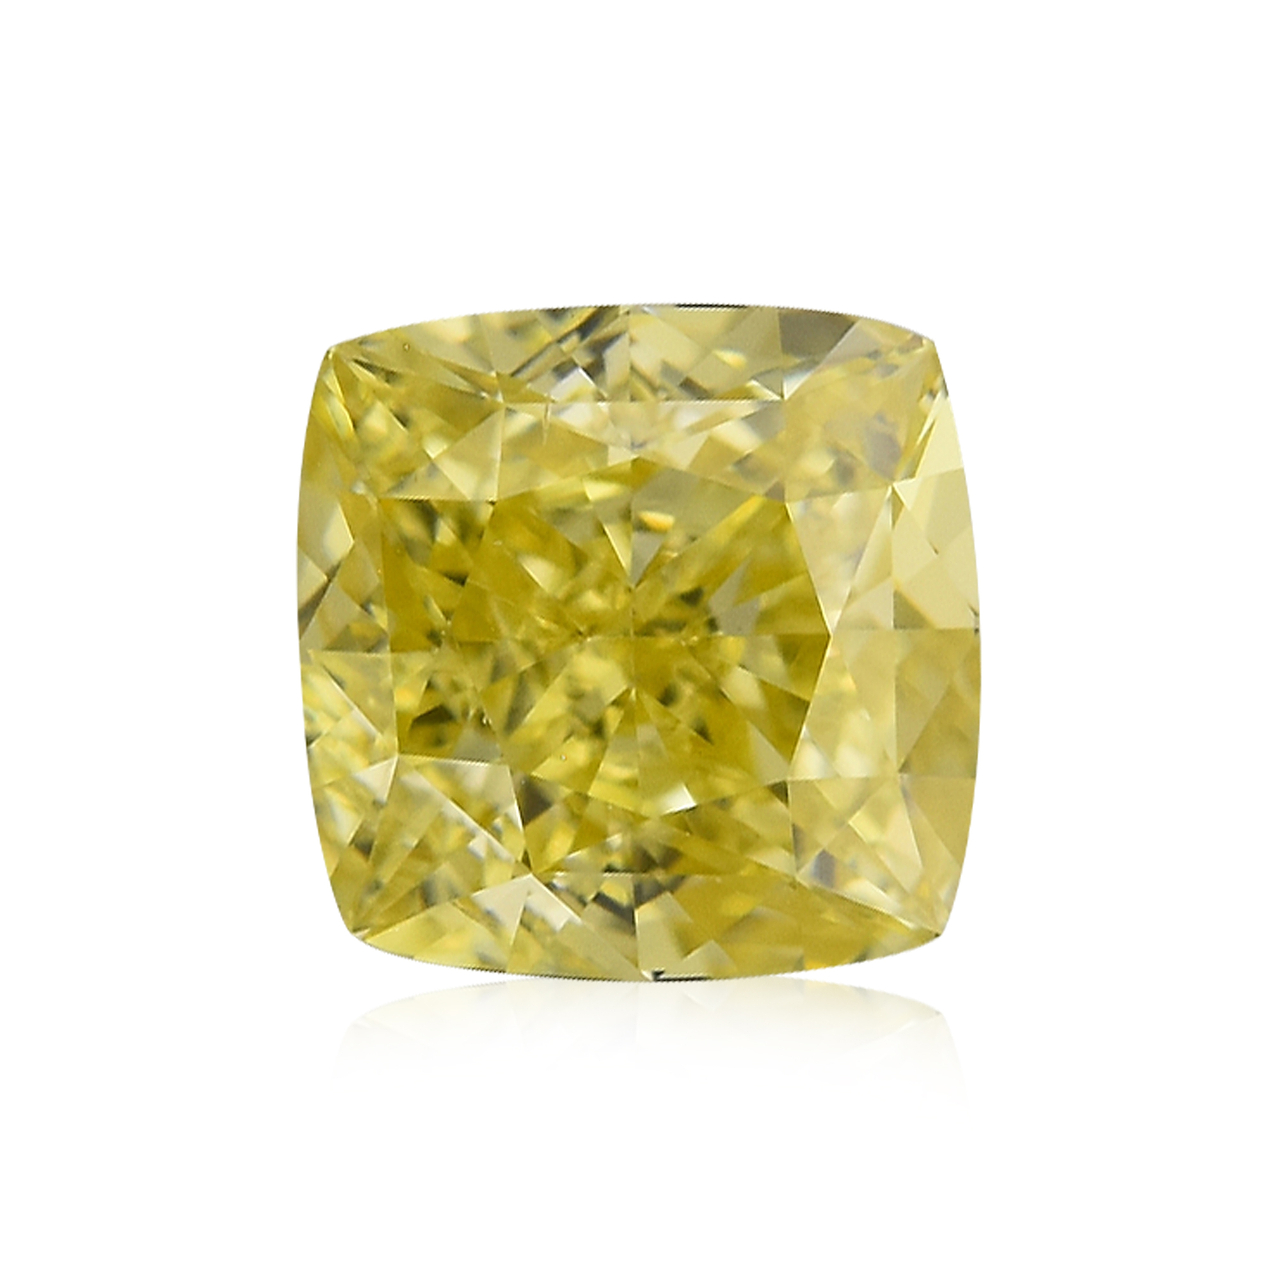 0.30 carat, Fancy Intense Yellow Diamond, Cushion Shape, VS2 Clarity, GIA,  SKU 229529